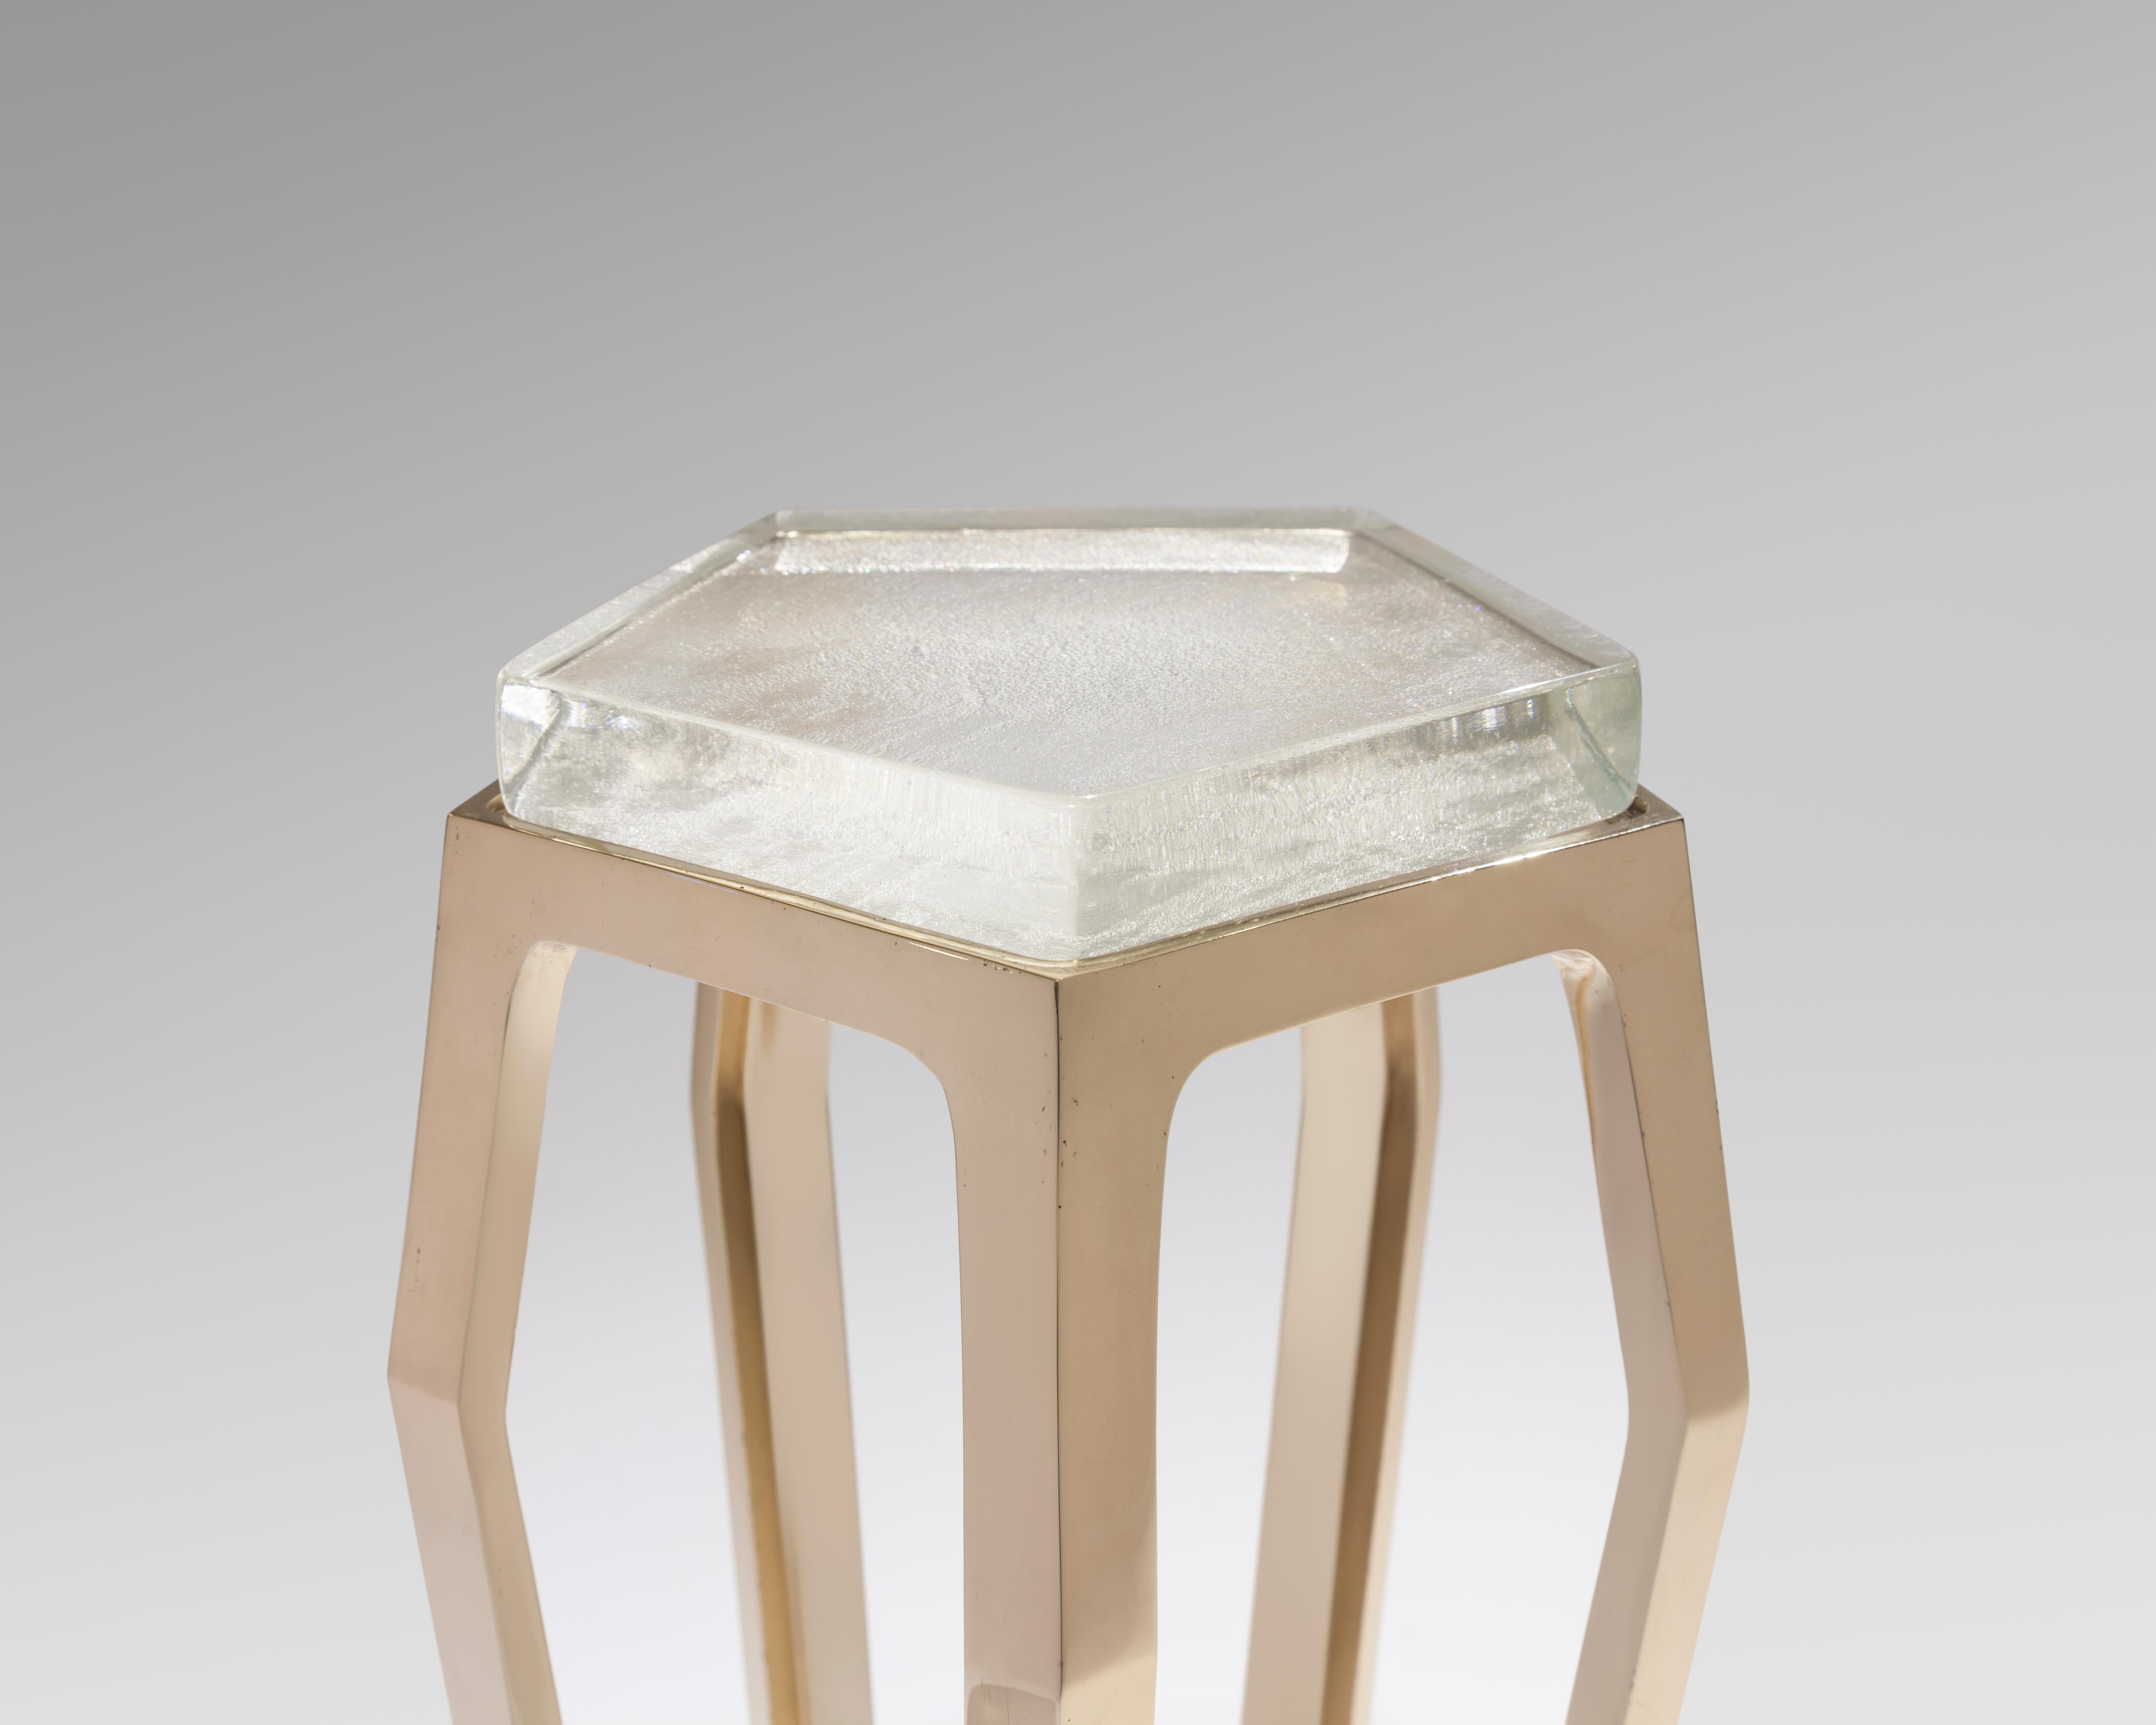 Der Gem Table von Chai Ming Studios ist von edlen Schmuckstücken inspiriert und bringt Stil und Eleganz in jede Umgebung. Mit Hilfe traditioneller Bronzegusstechniken wird die geschmolzene Bronze in den einzigartigen fünfseitigen Sockel verwandelt